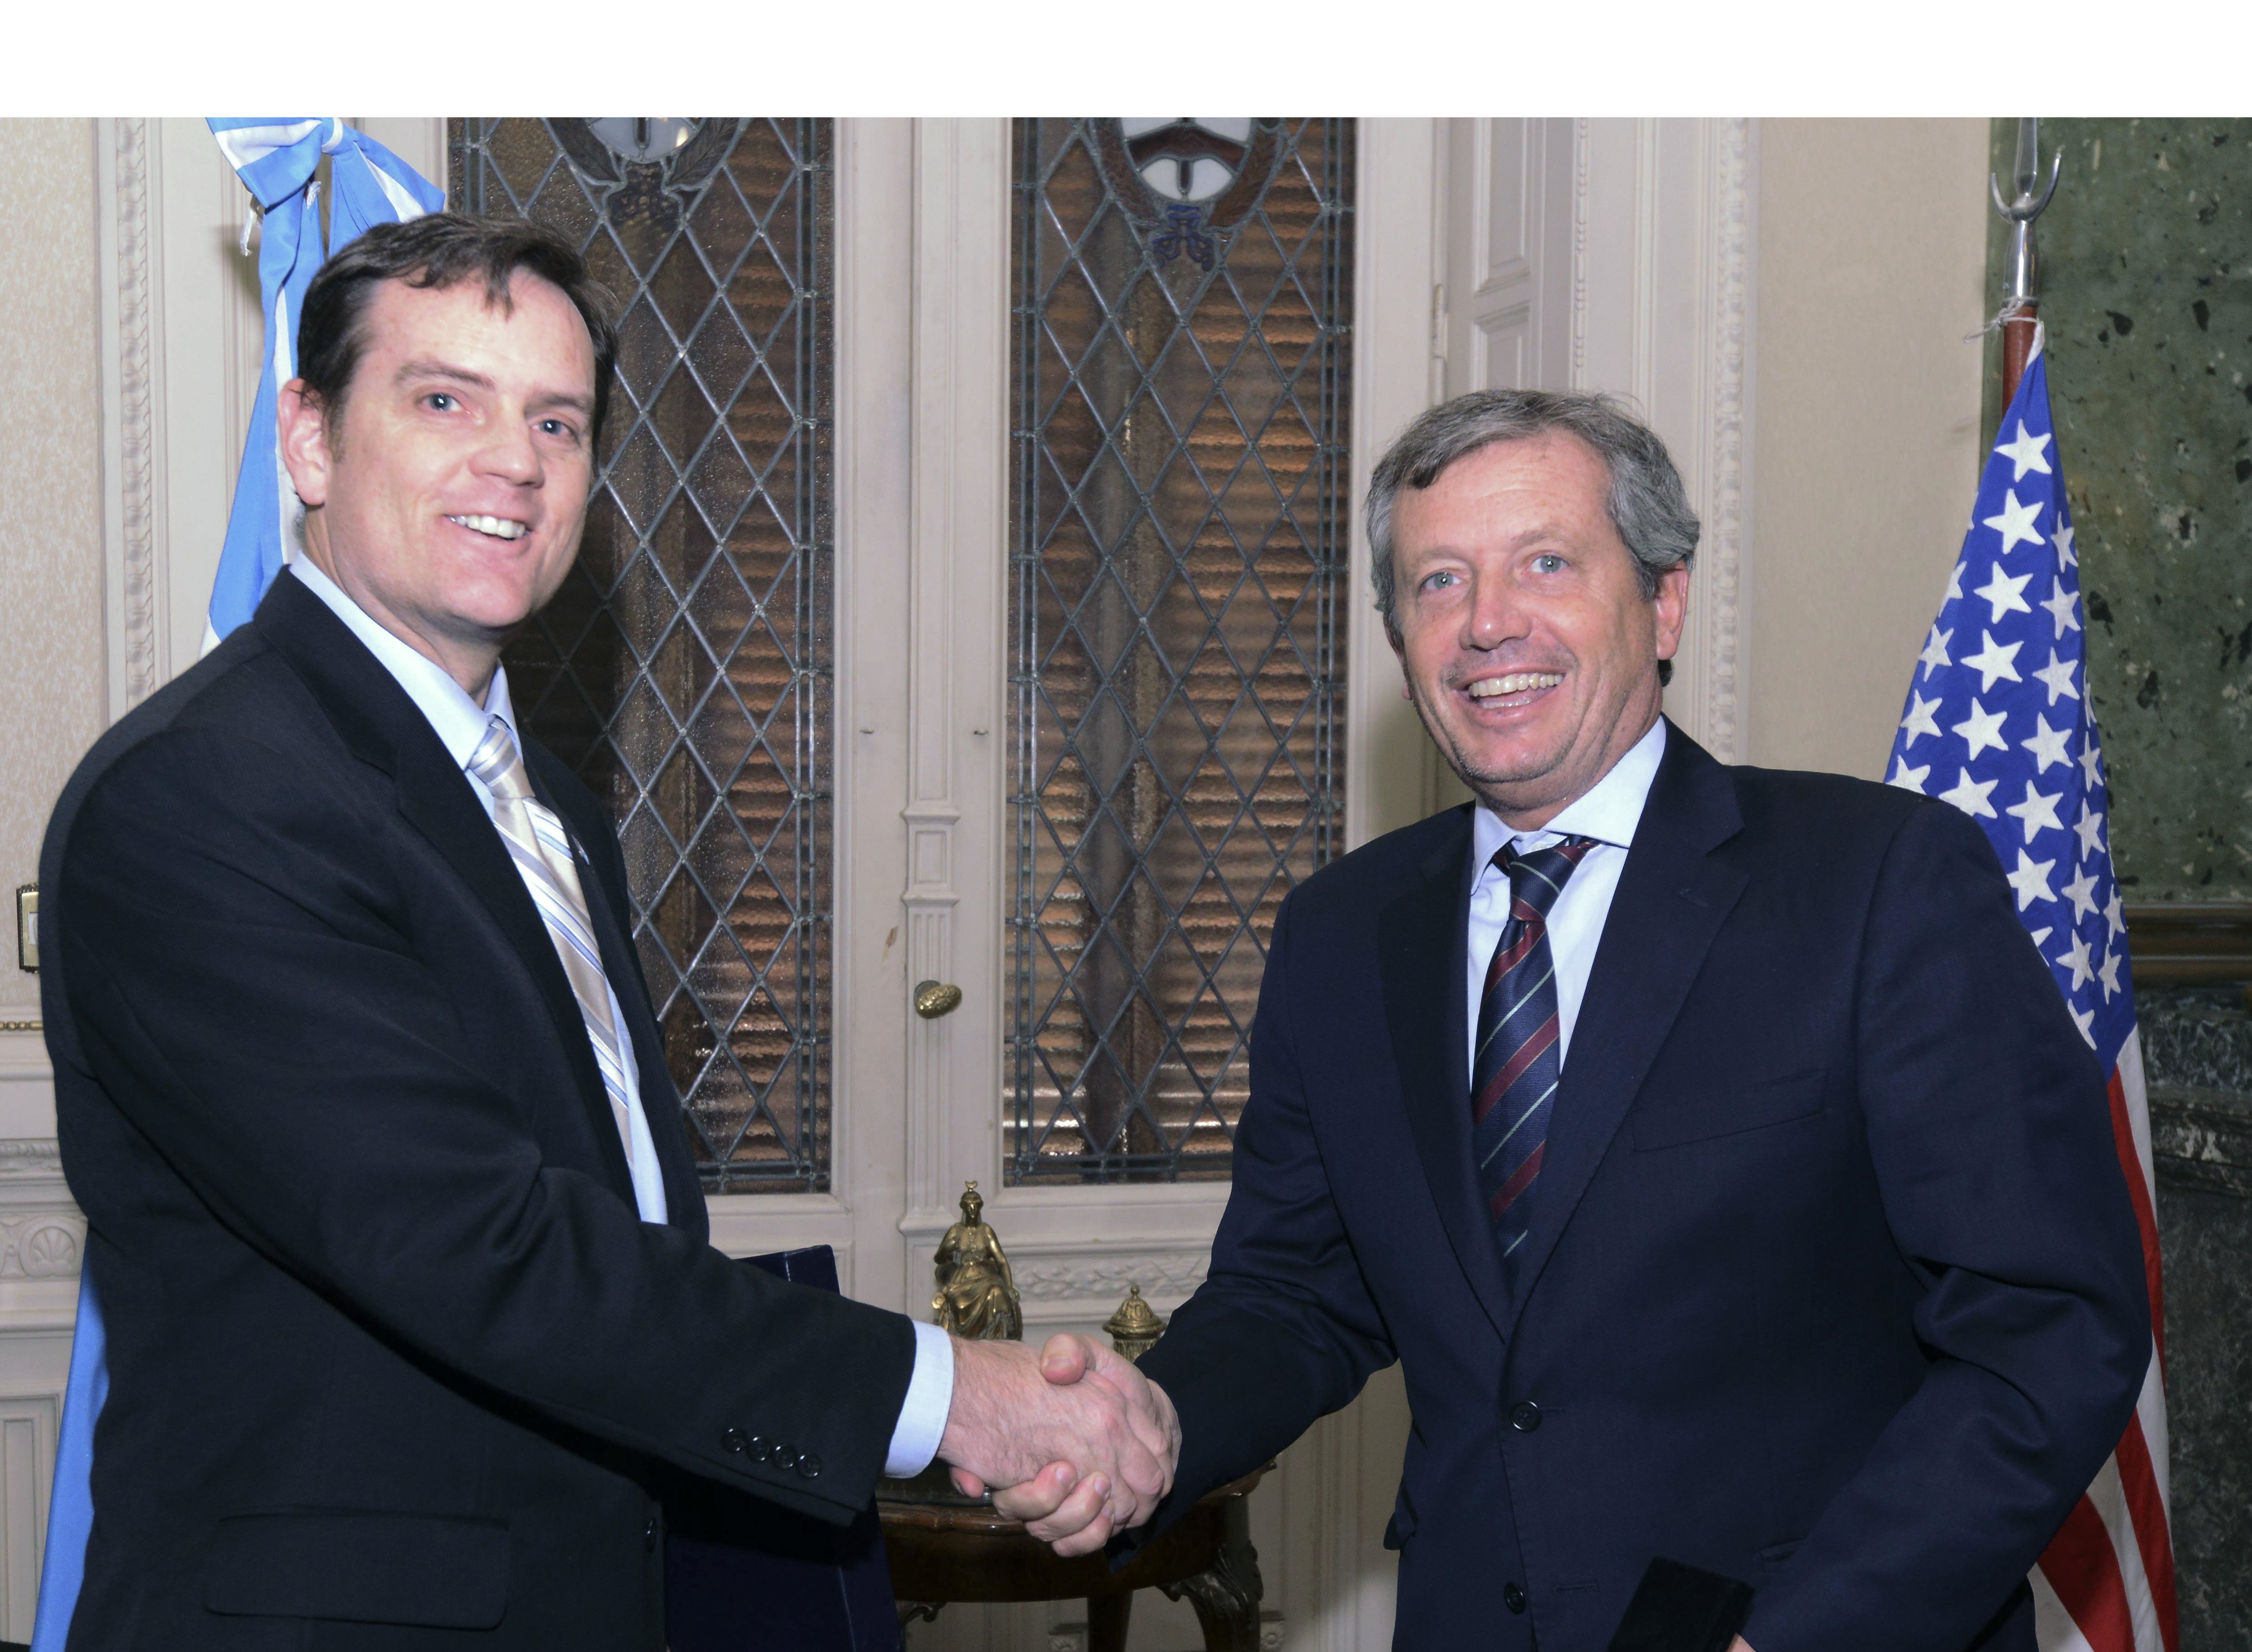 El Encargado de Negocios de la sede diplomática norteamericana, Thomas Cooney, visitó la H. Cámara de Diputados de la Nación y se reunió con su Presidente Emilio Monzó